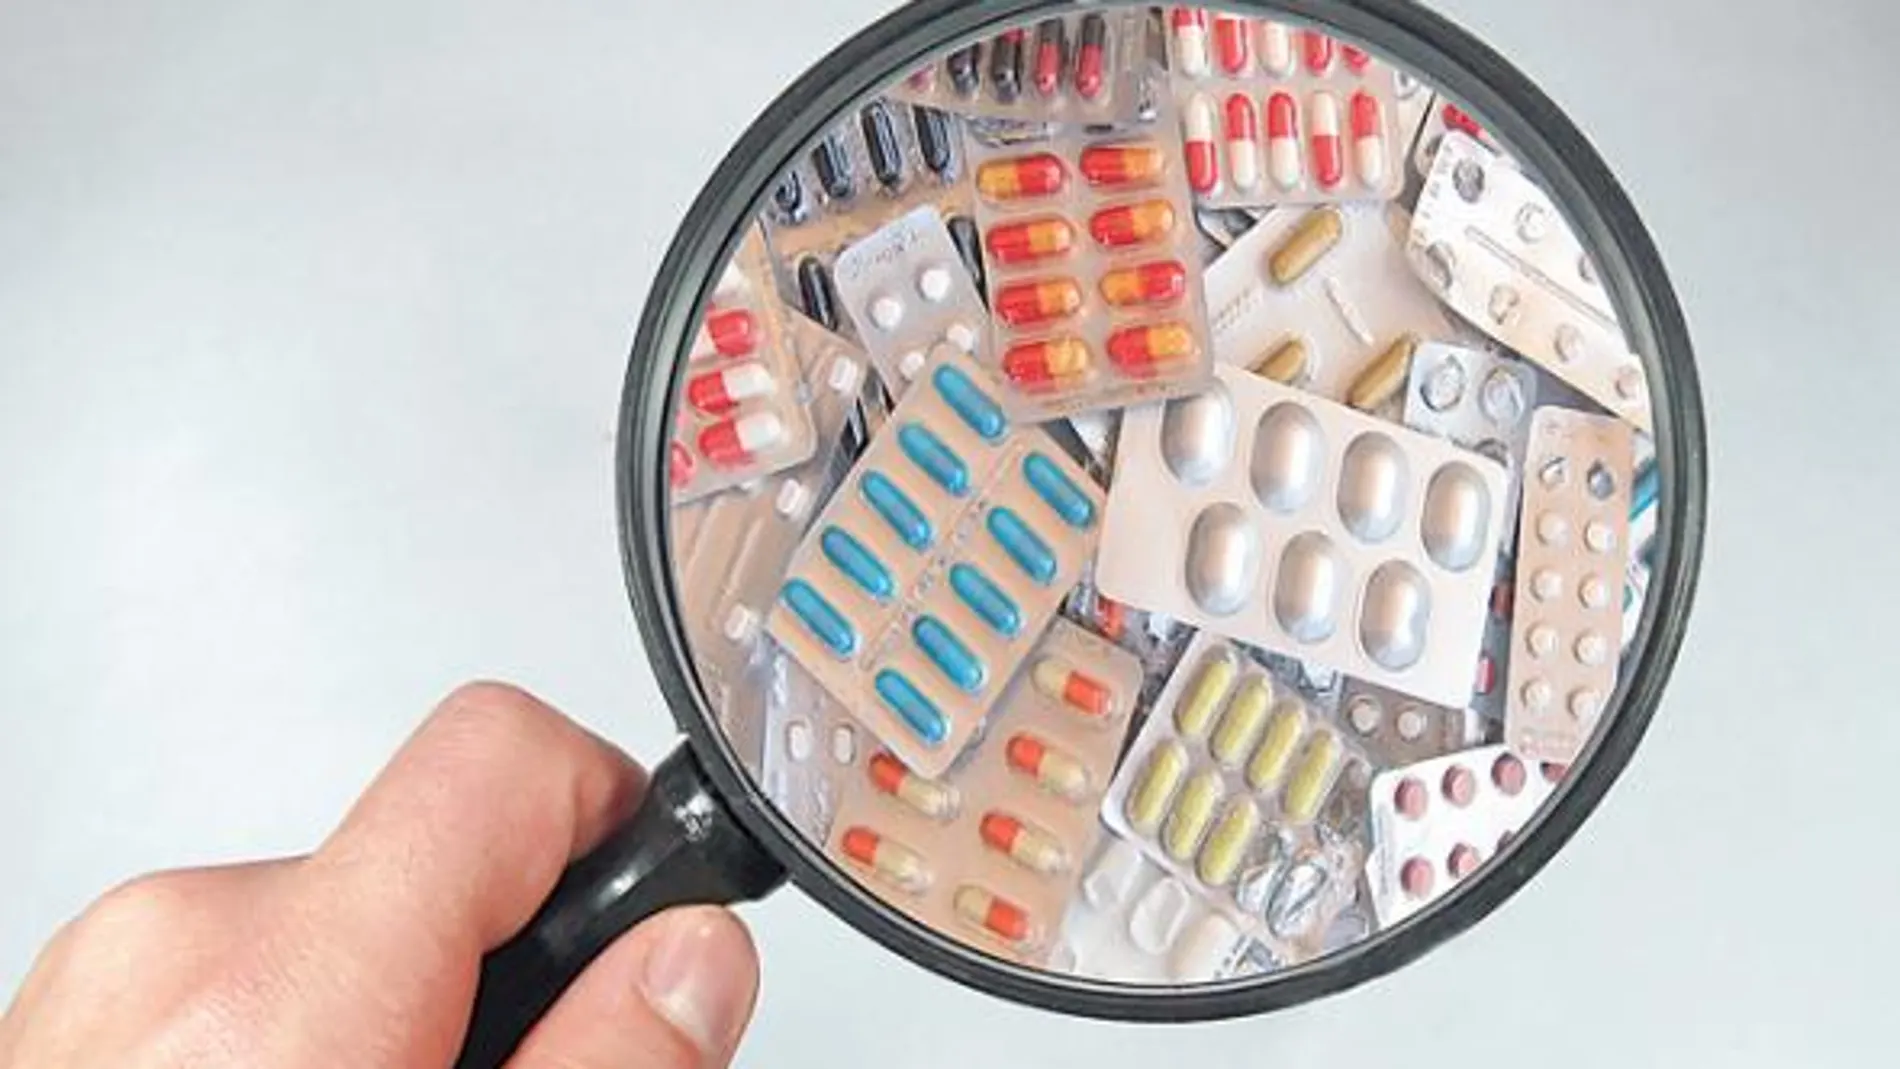 La farmacia es la ciencia y práctica de la preparación, conservación, presentación y dispensación de medicamentos